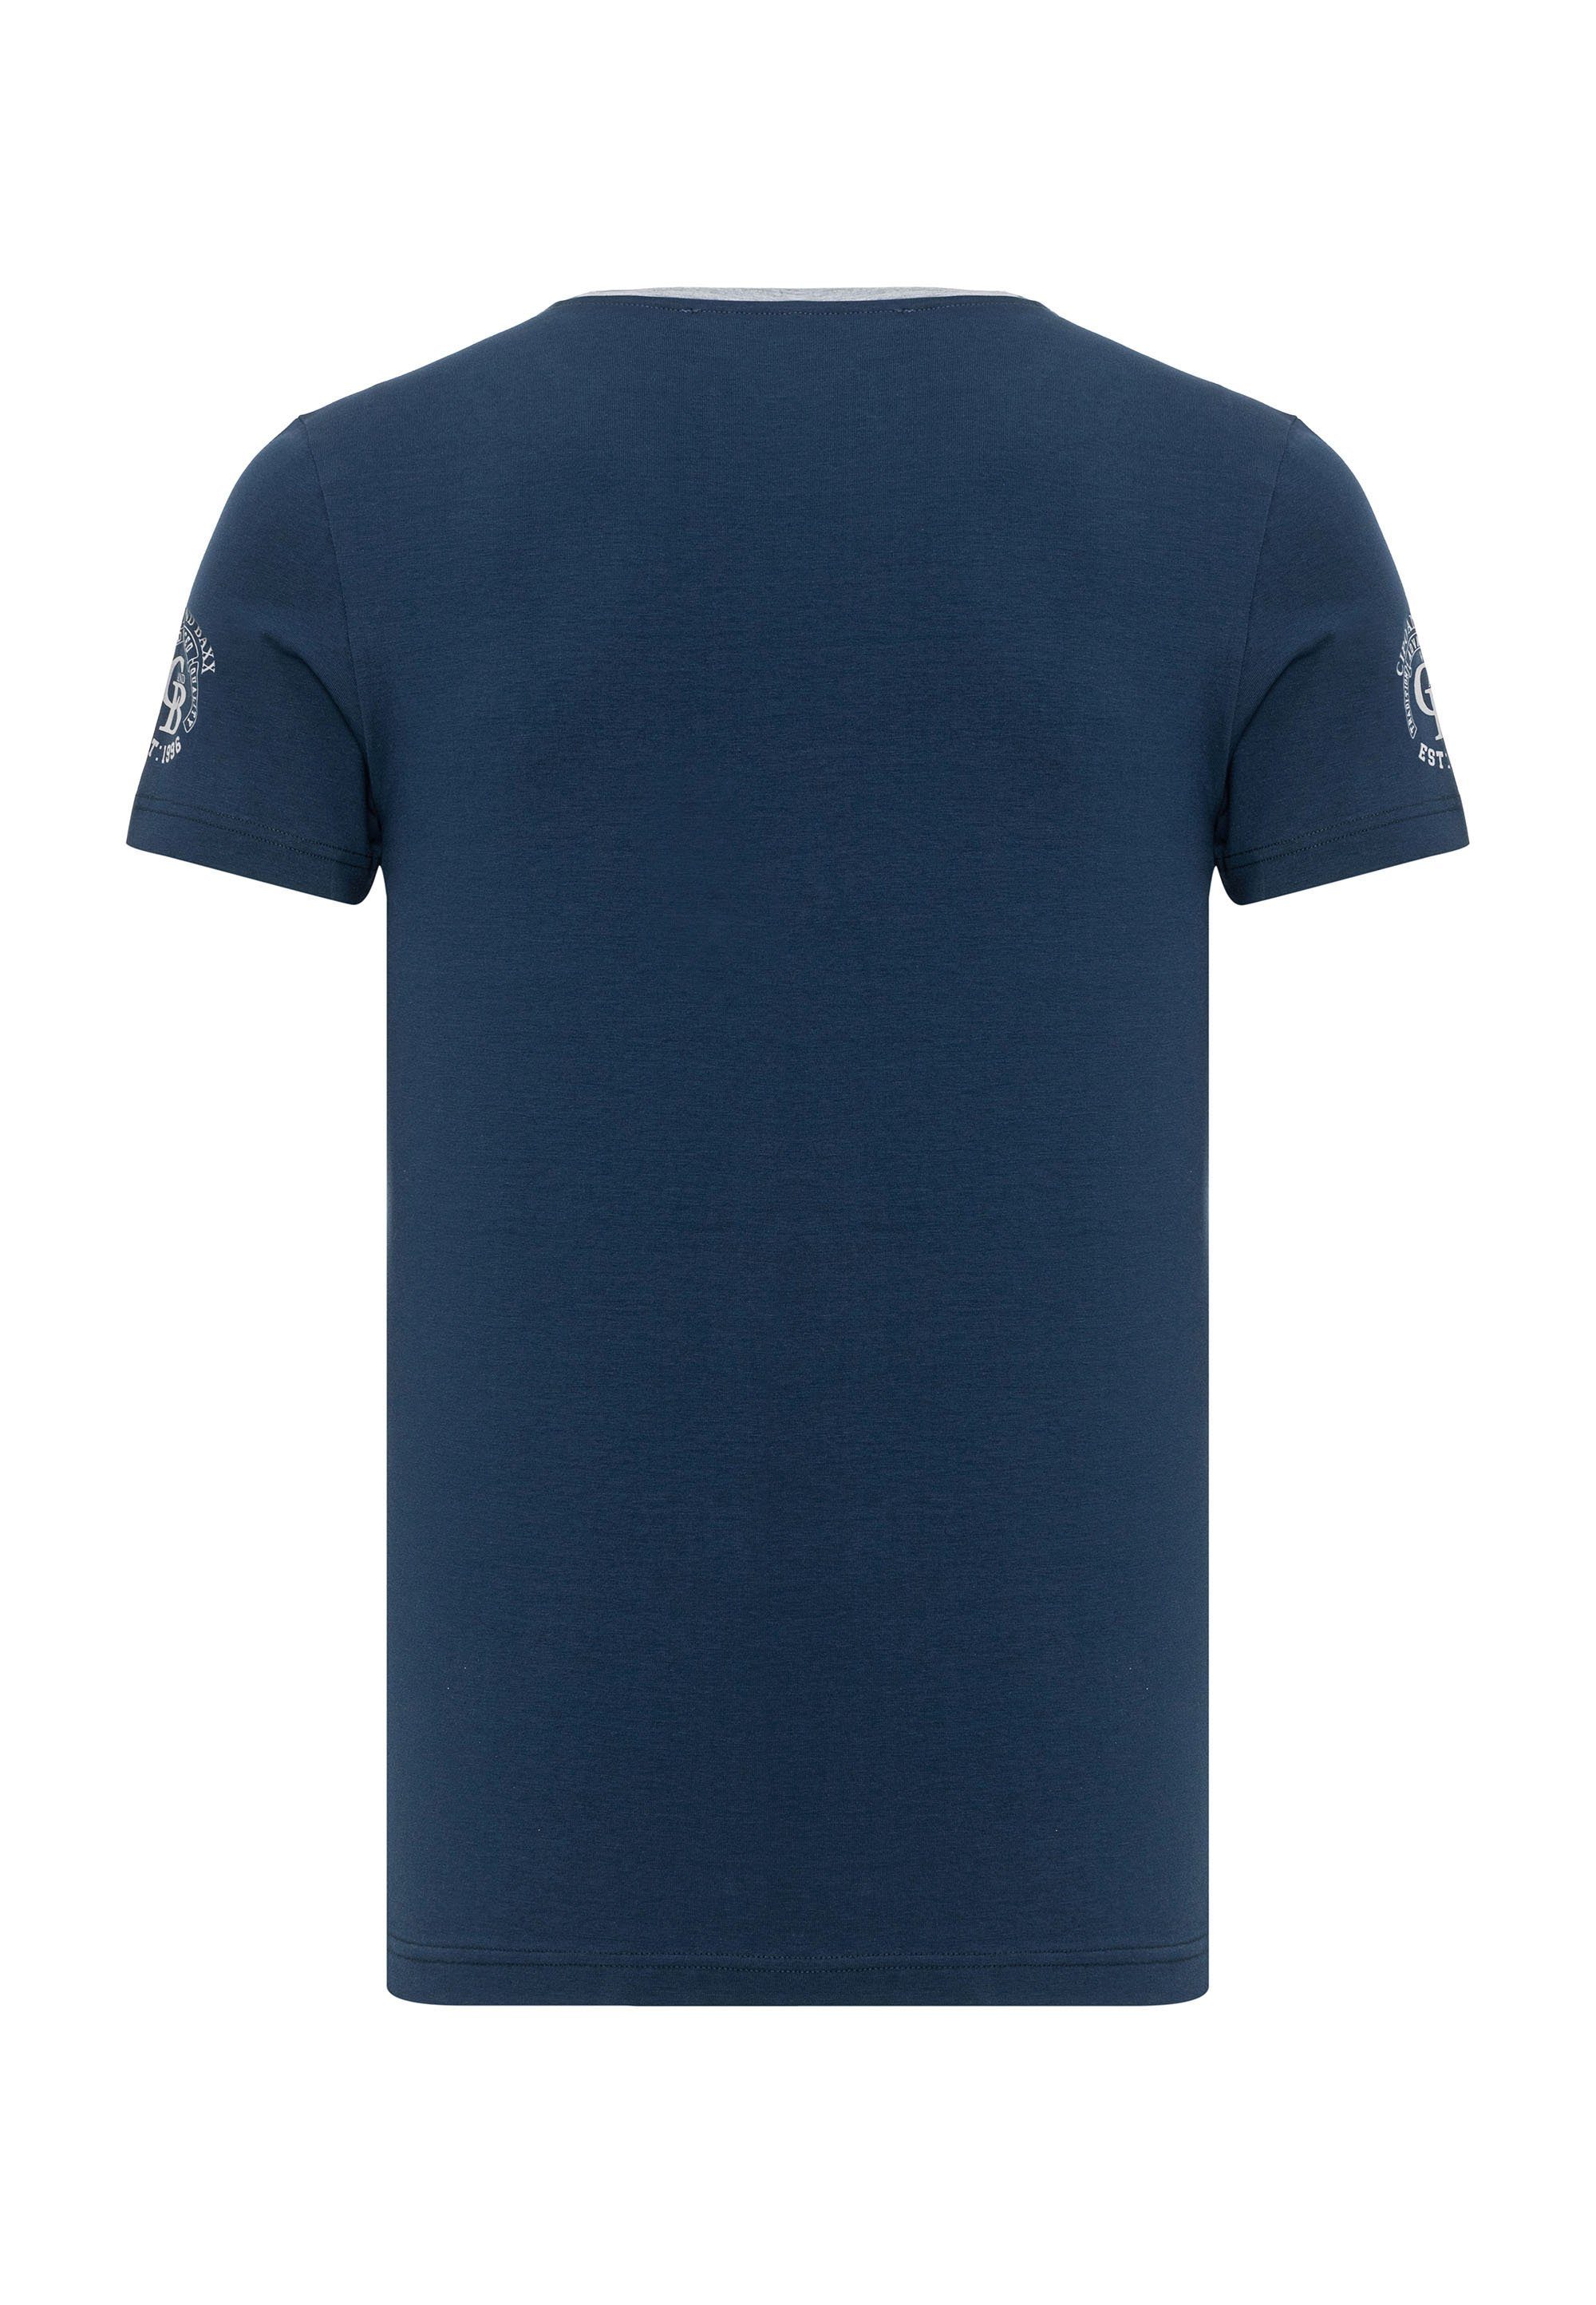 dezenten Baxx Cipo Markenlogos blau mit & T-Shirt